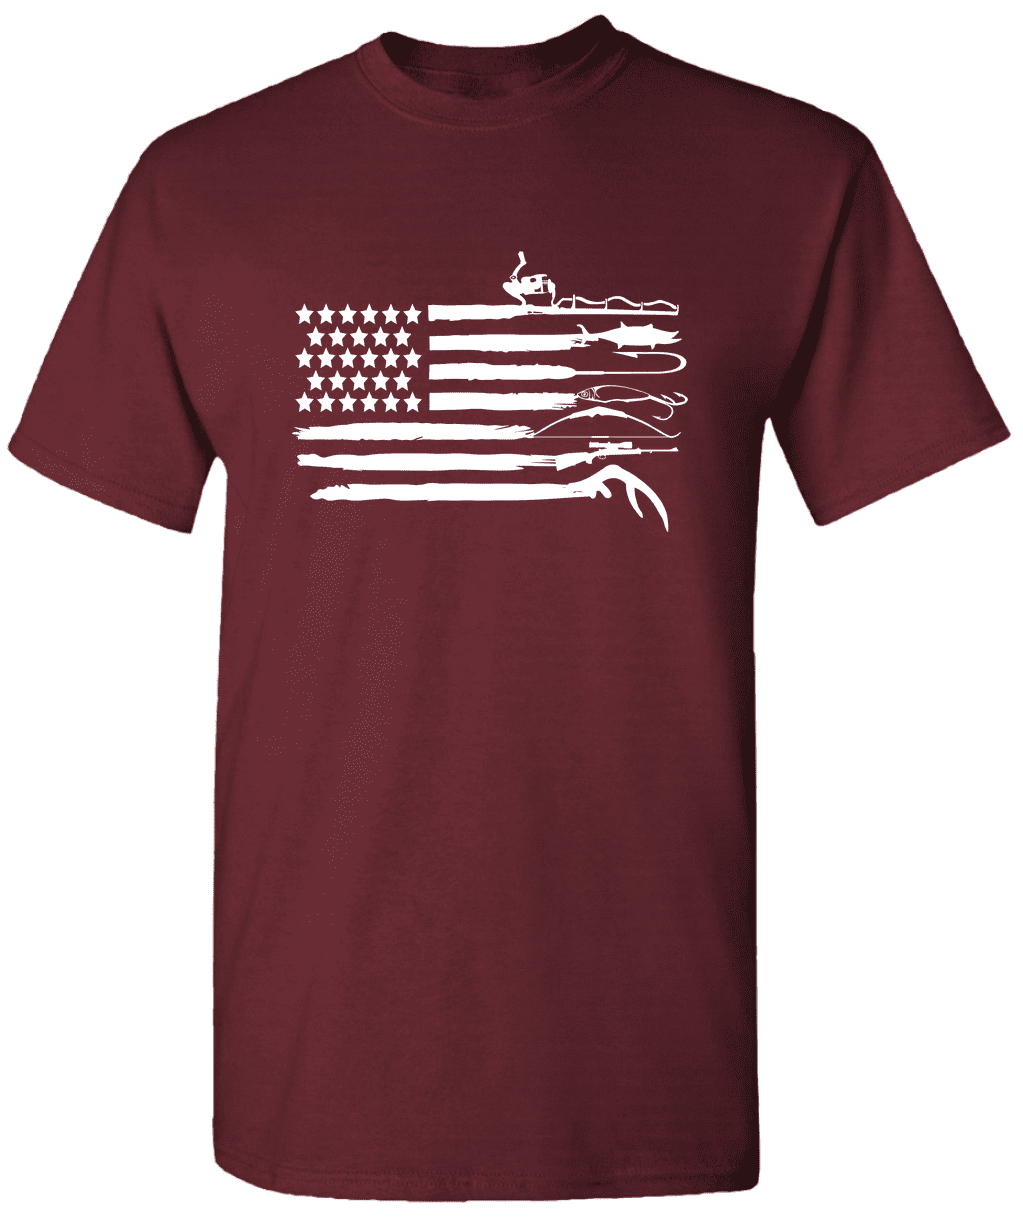 Boys American Flag Shirt, Boys Fishing Shirt, Fishing Pole Shirt